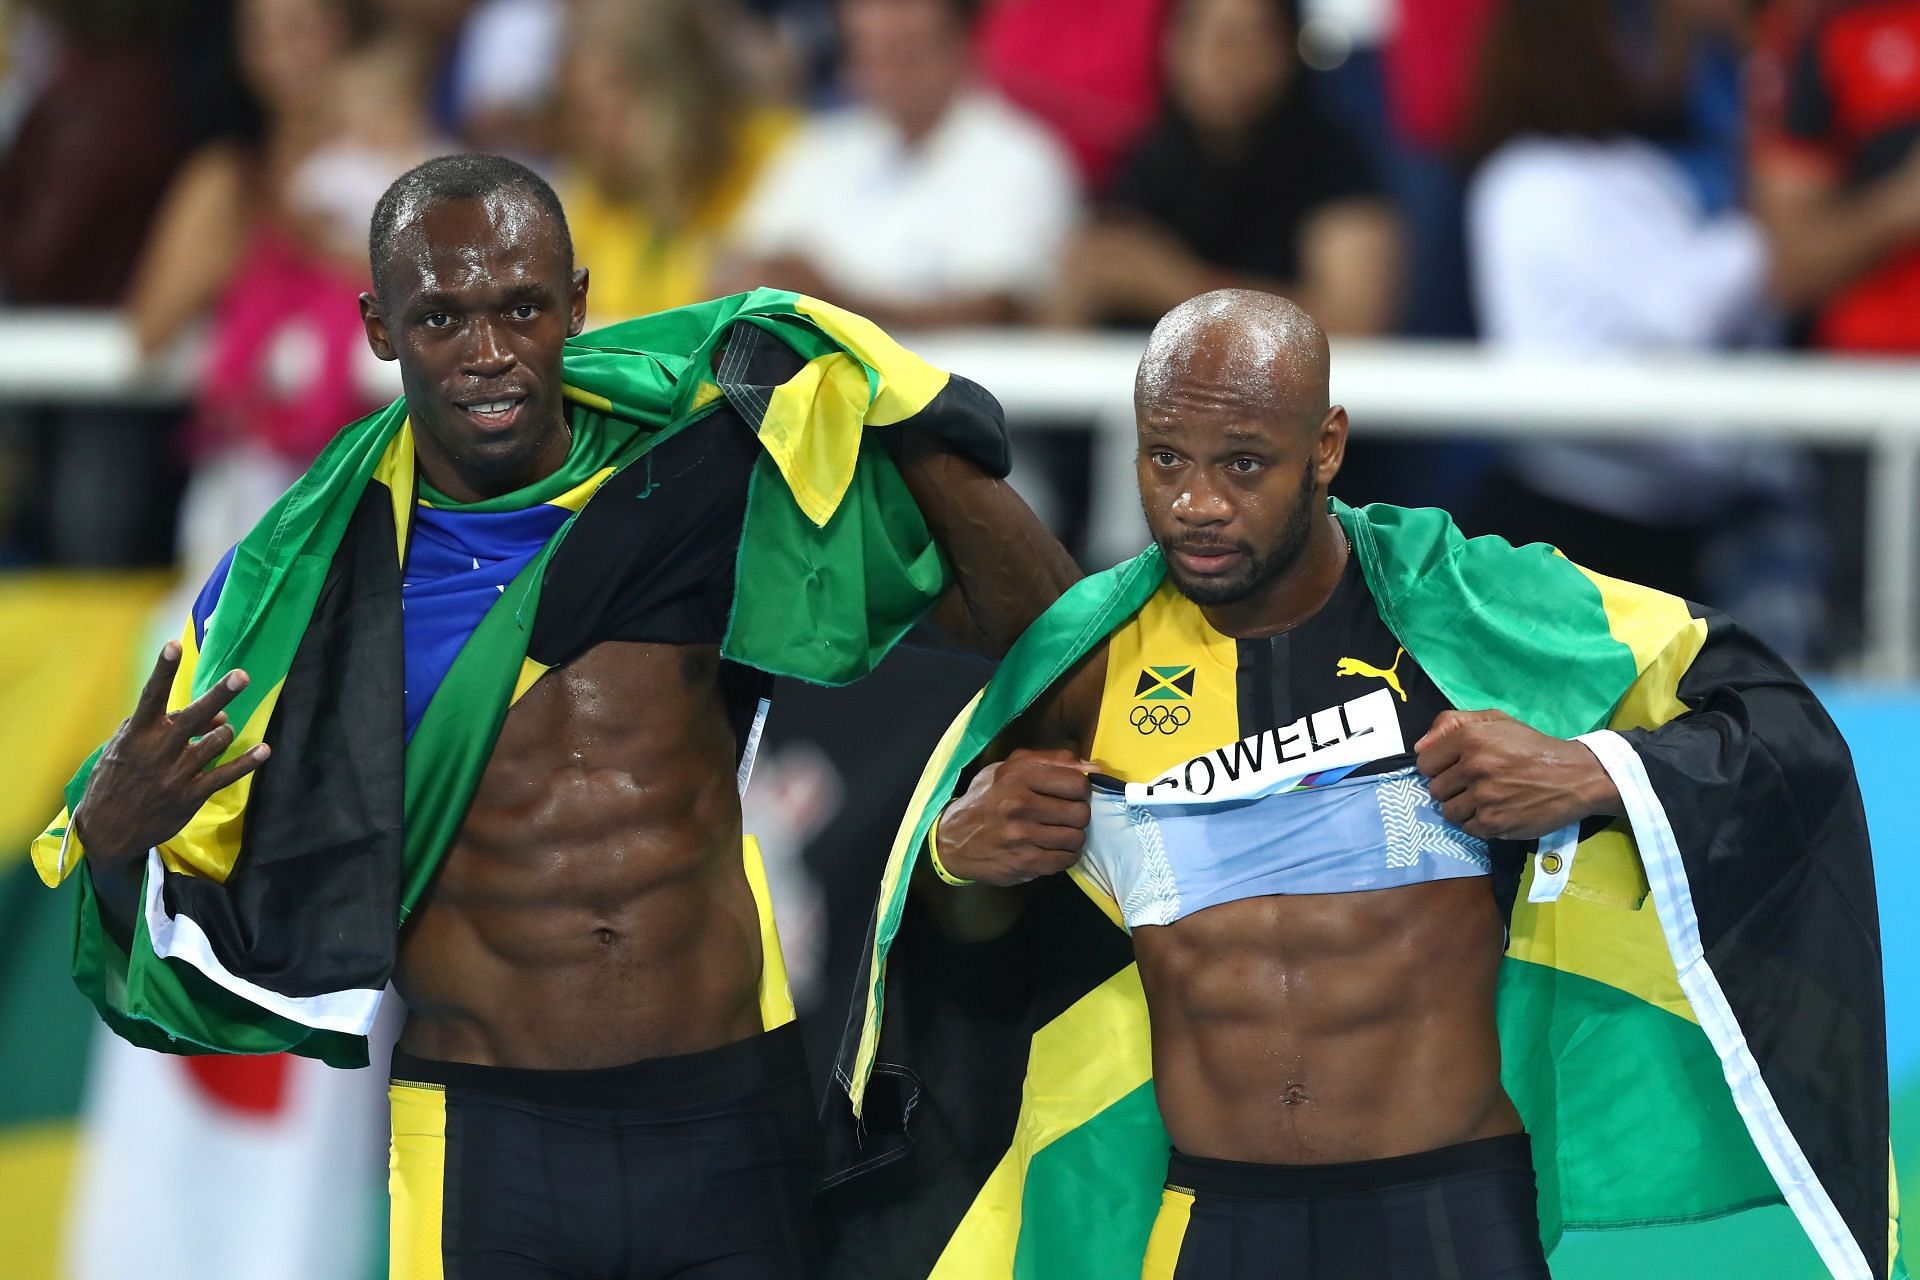 Usain Bolt and Asafa Powell at the 2016 Rio Olympics in Rio de Janeiro